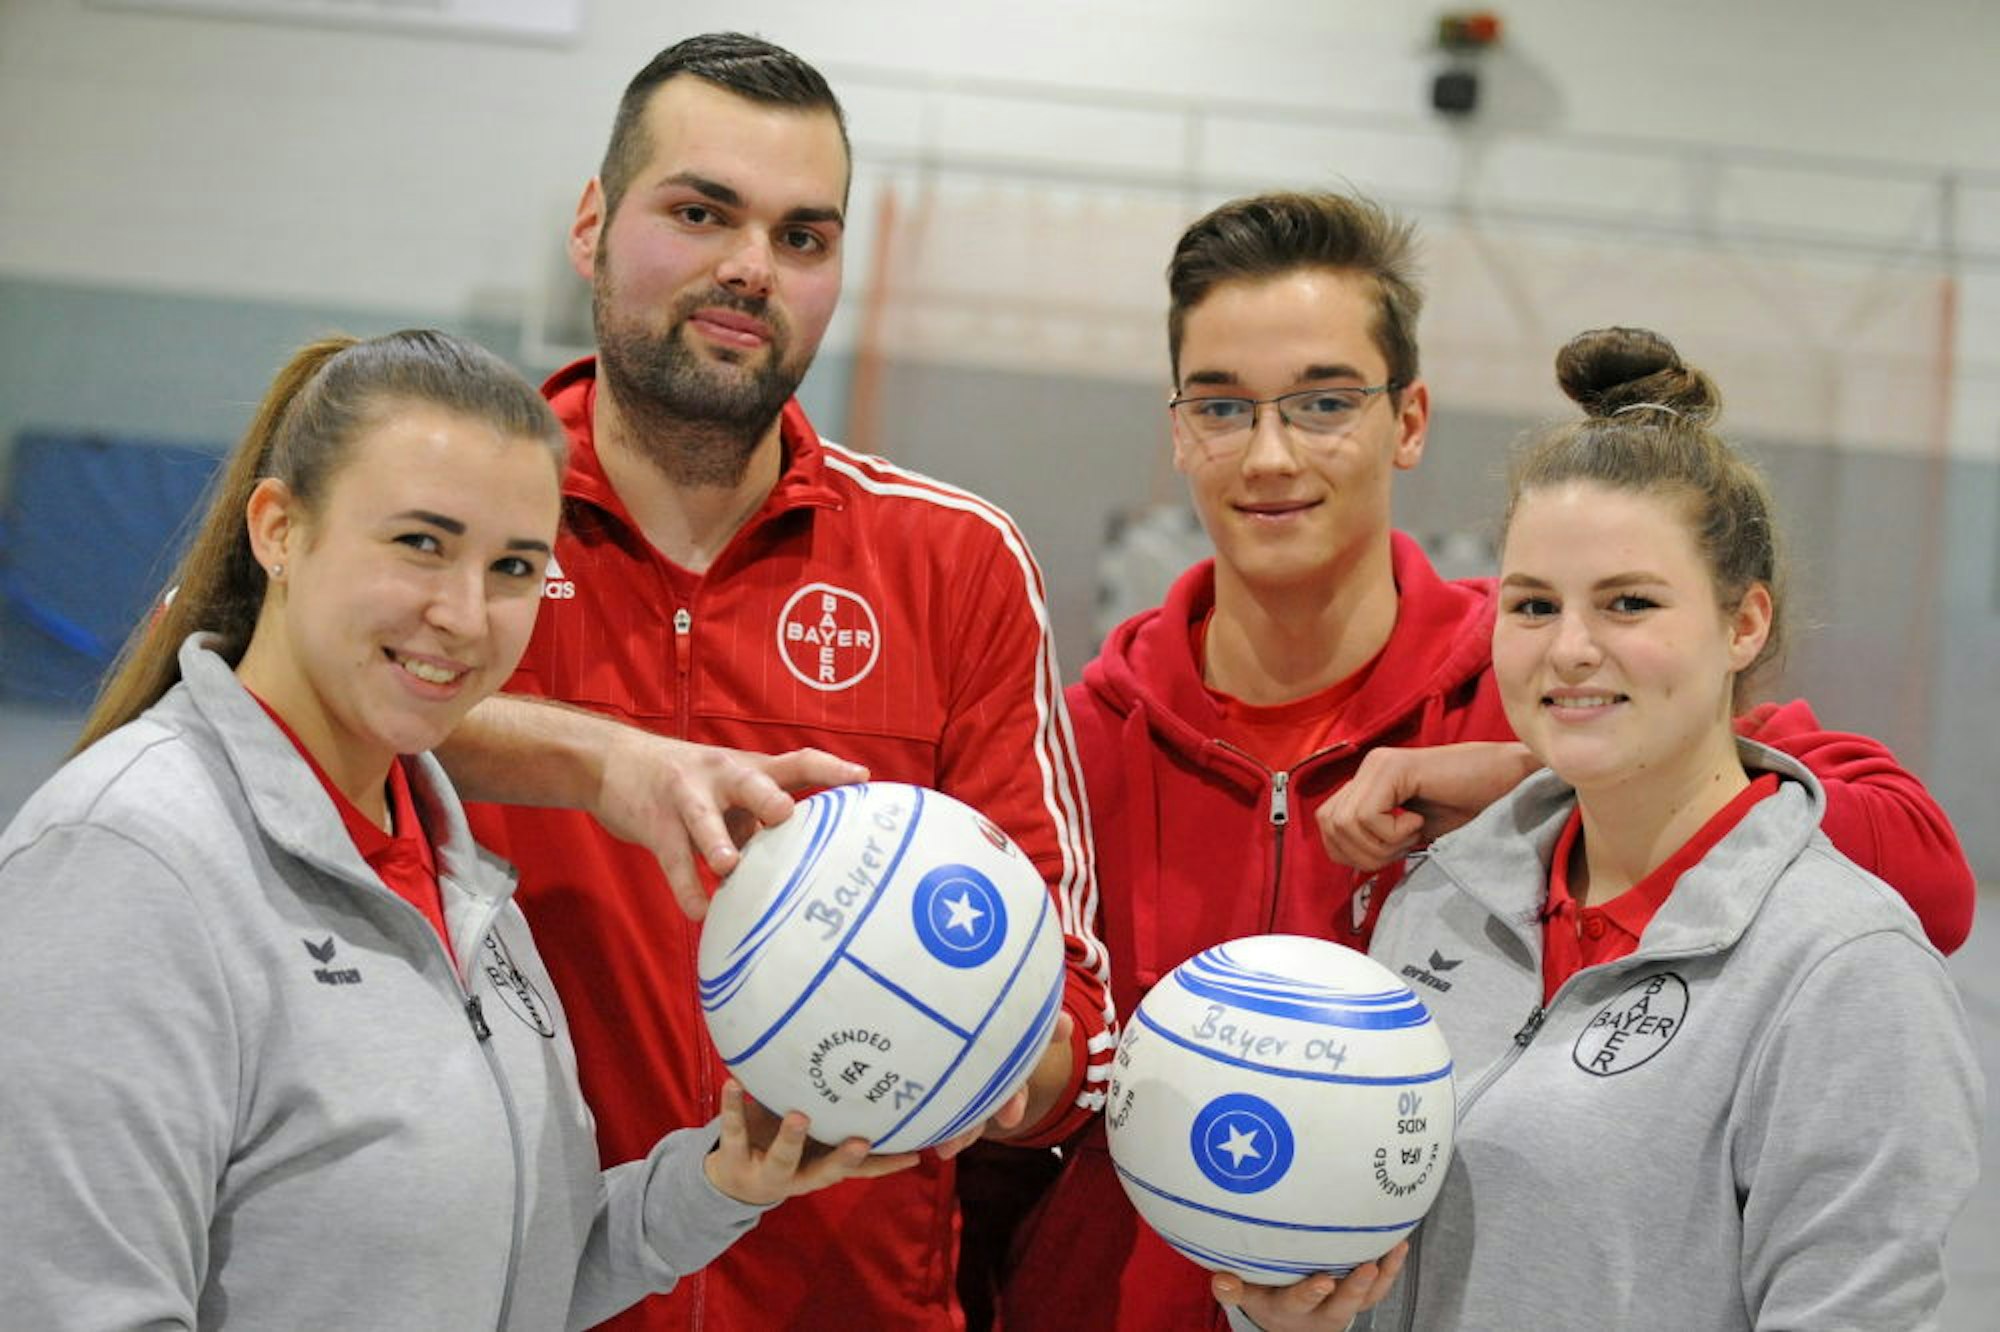 Das Trainerteam: Hannah Roese, Niklas Hodel, Finn Dercks und Alina Tiemesmann (von links)